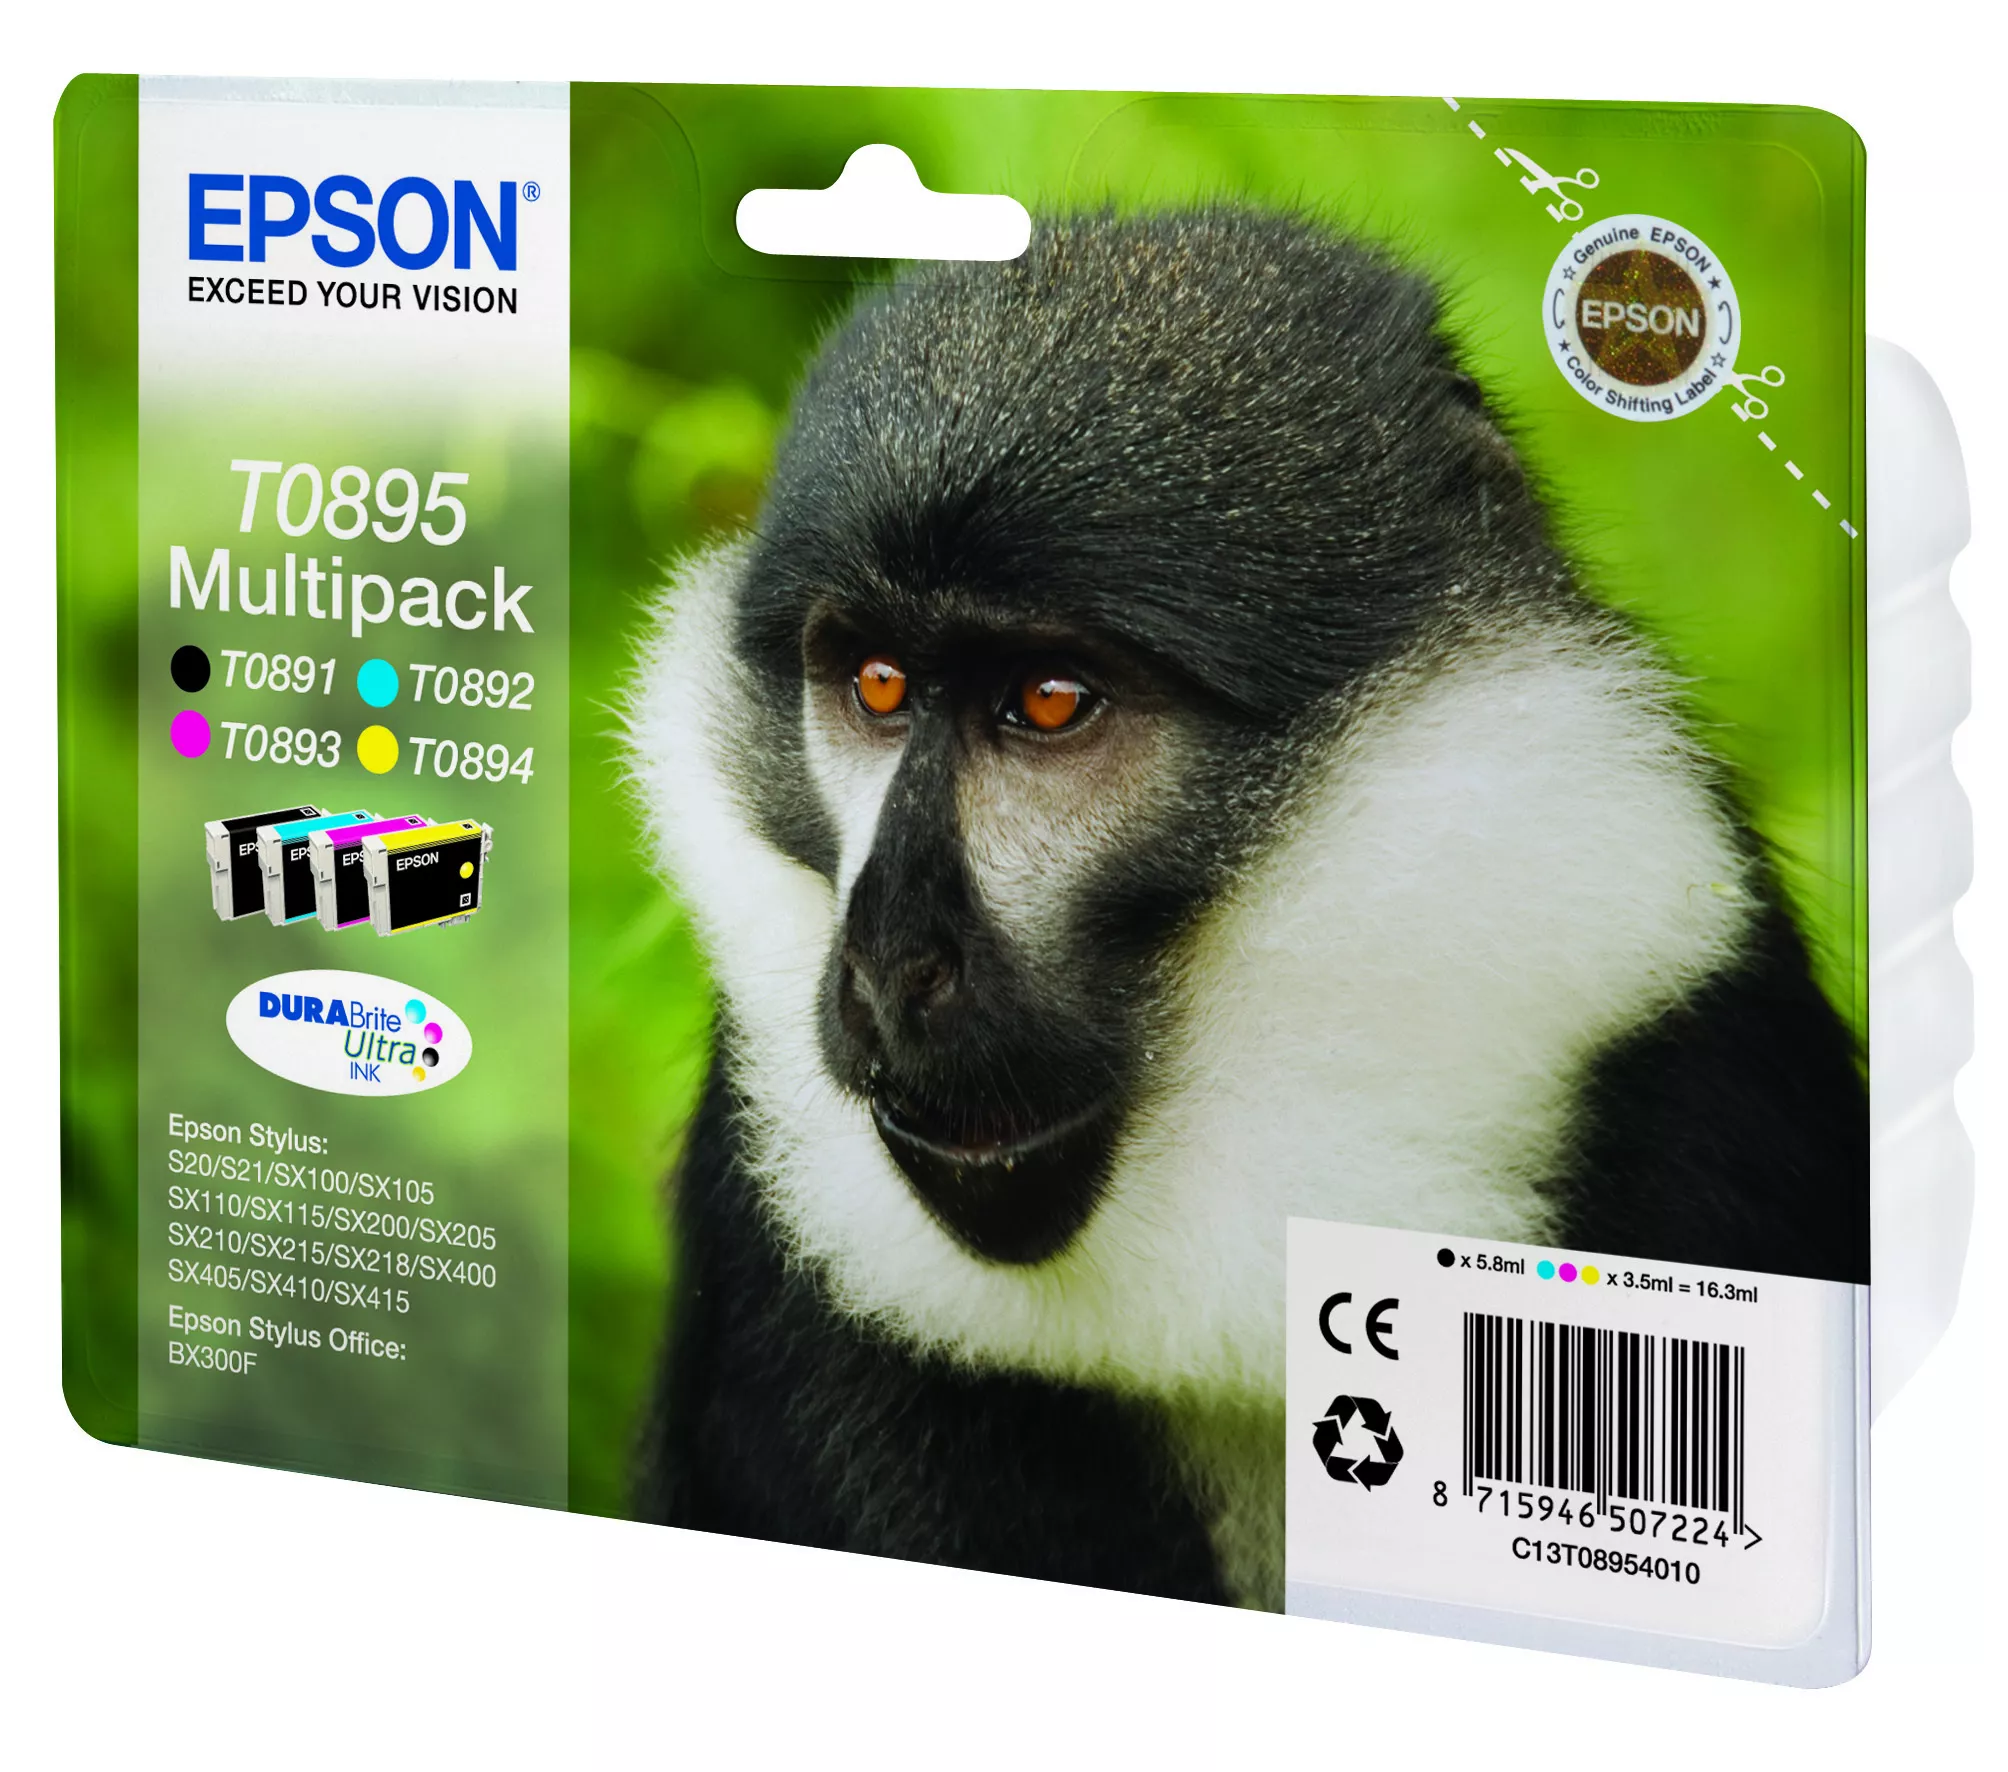 Vente EPSON T0895 cartouche d encre noir et tricolore Epson au meilleur prix - visuel 2